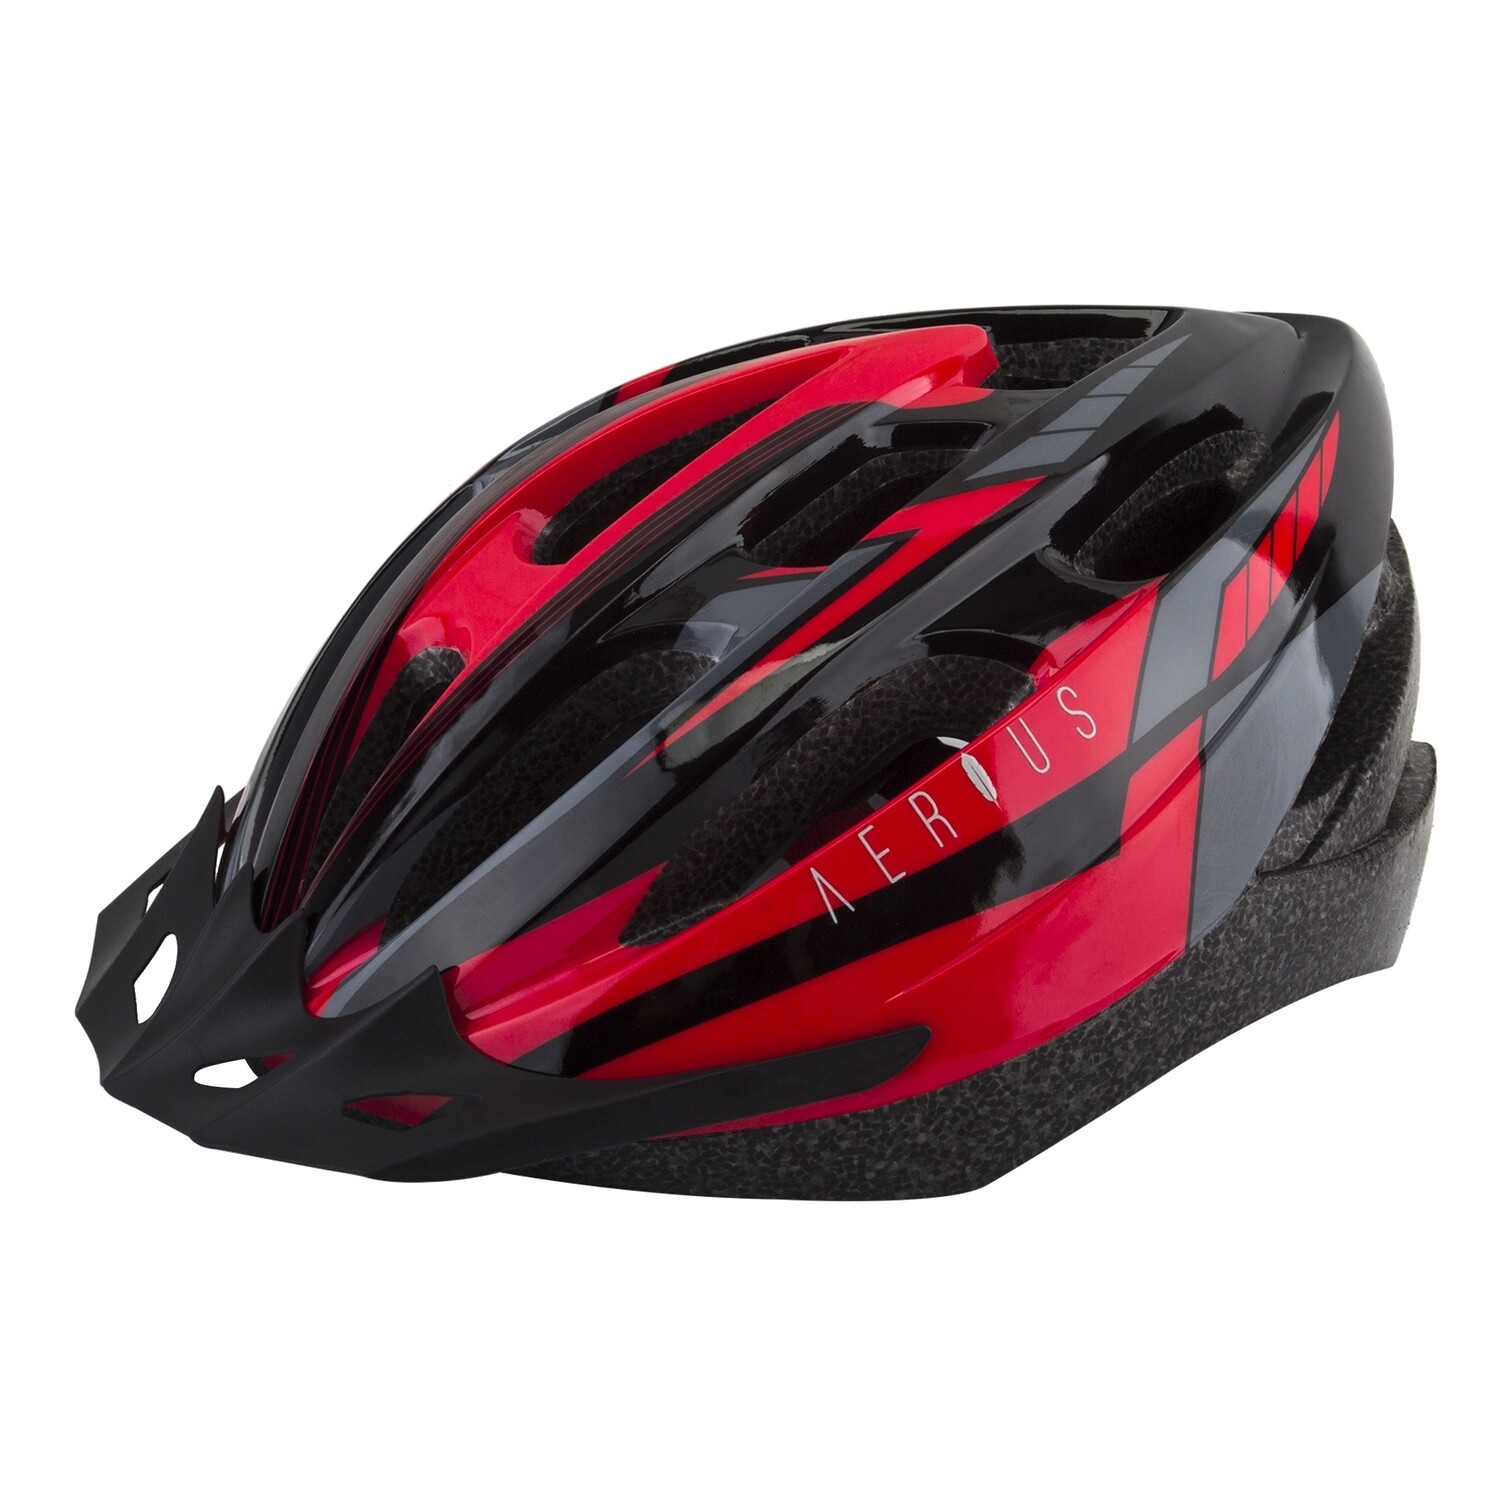 AERIUS Helmet M/L Black/Red (58 to 62 cm)